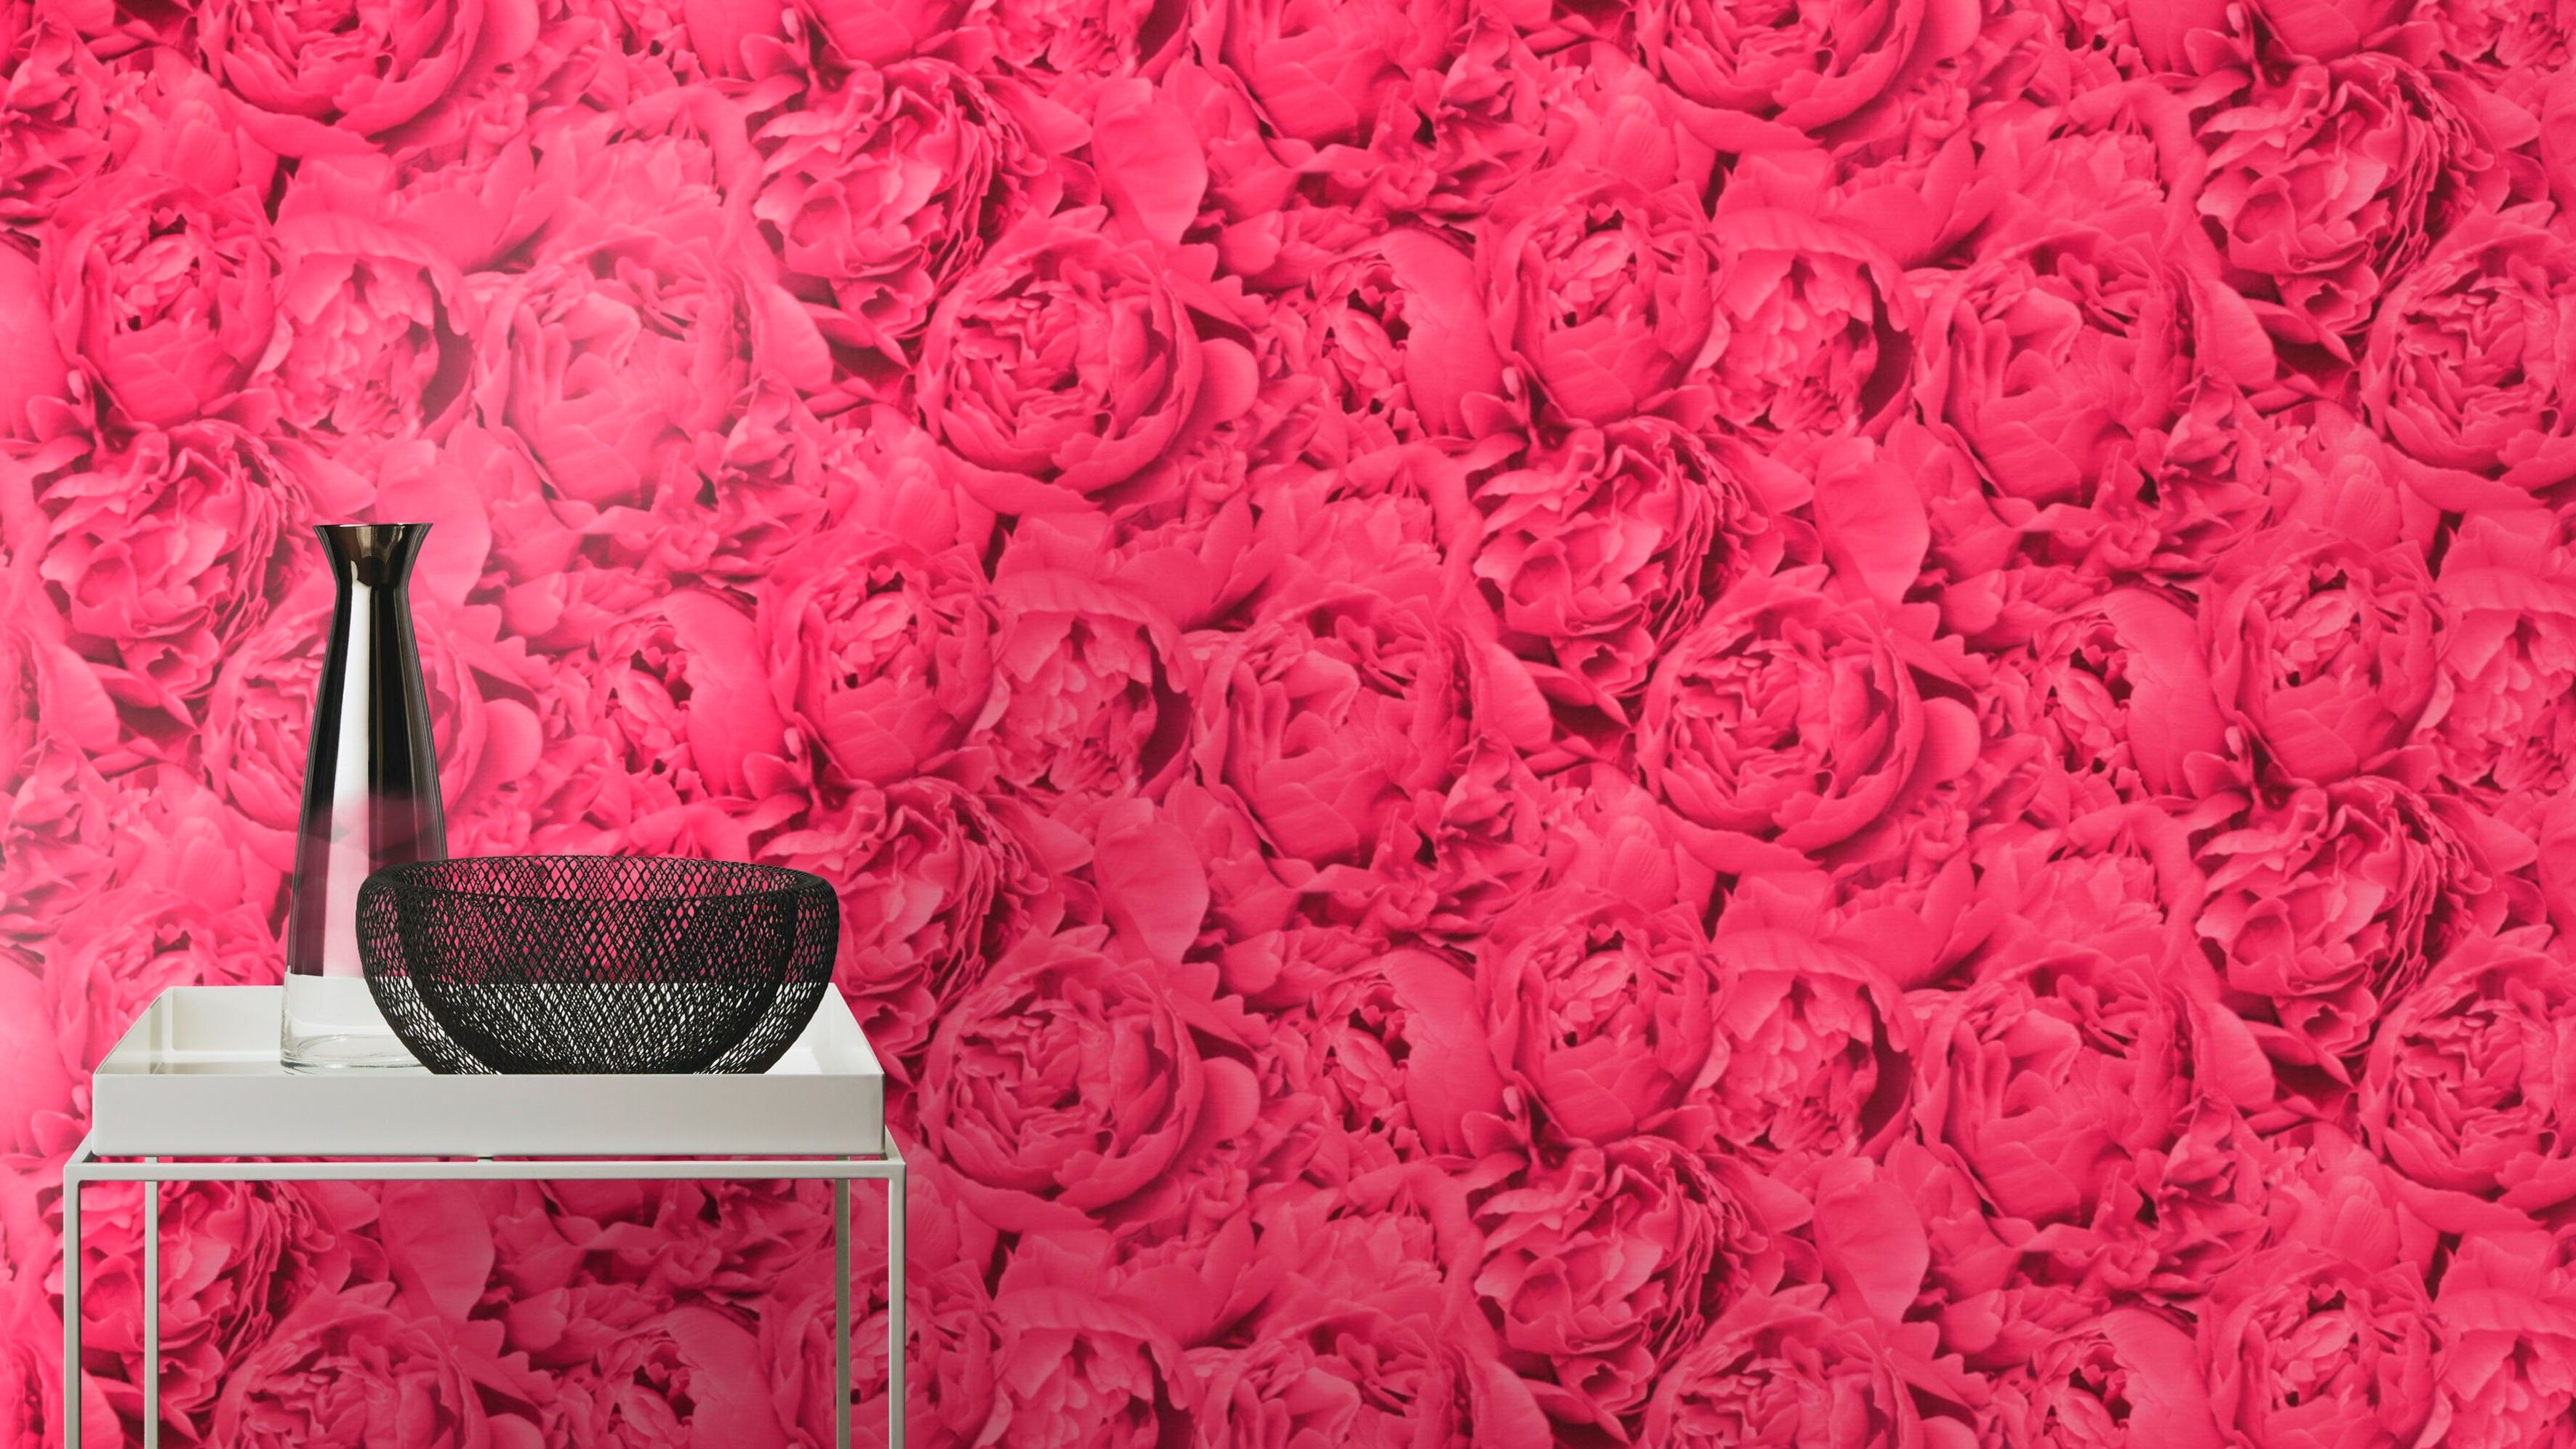 freundin Home Collection Rosen, pink geblümt Vliestapete